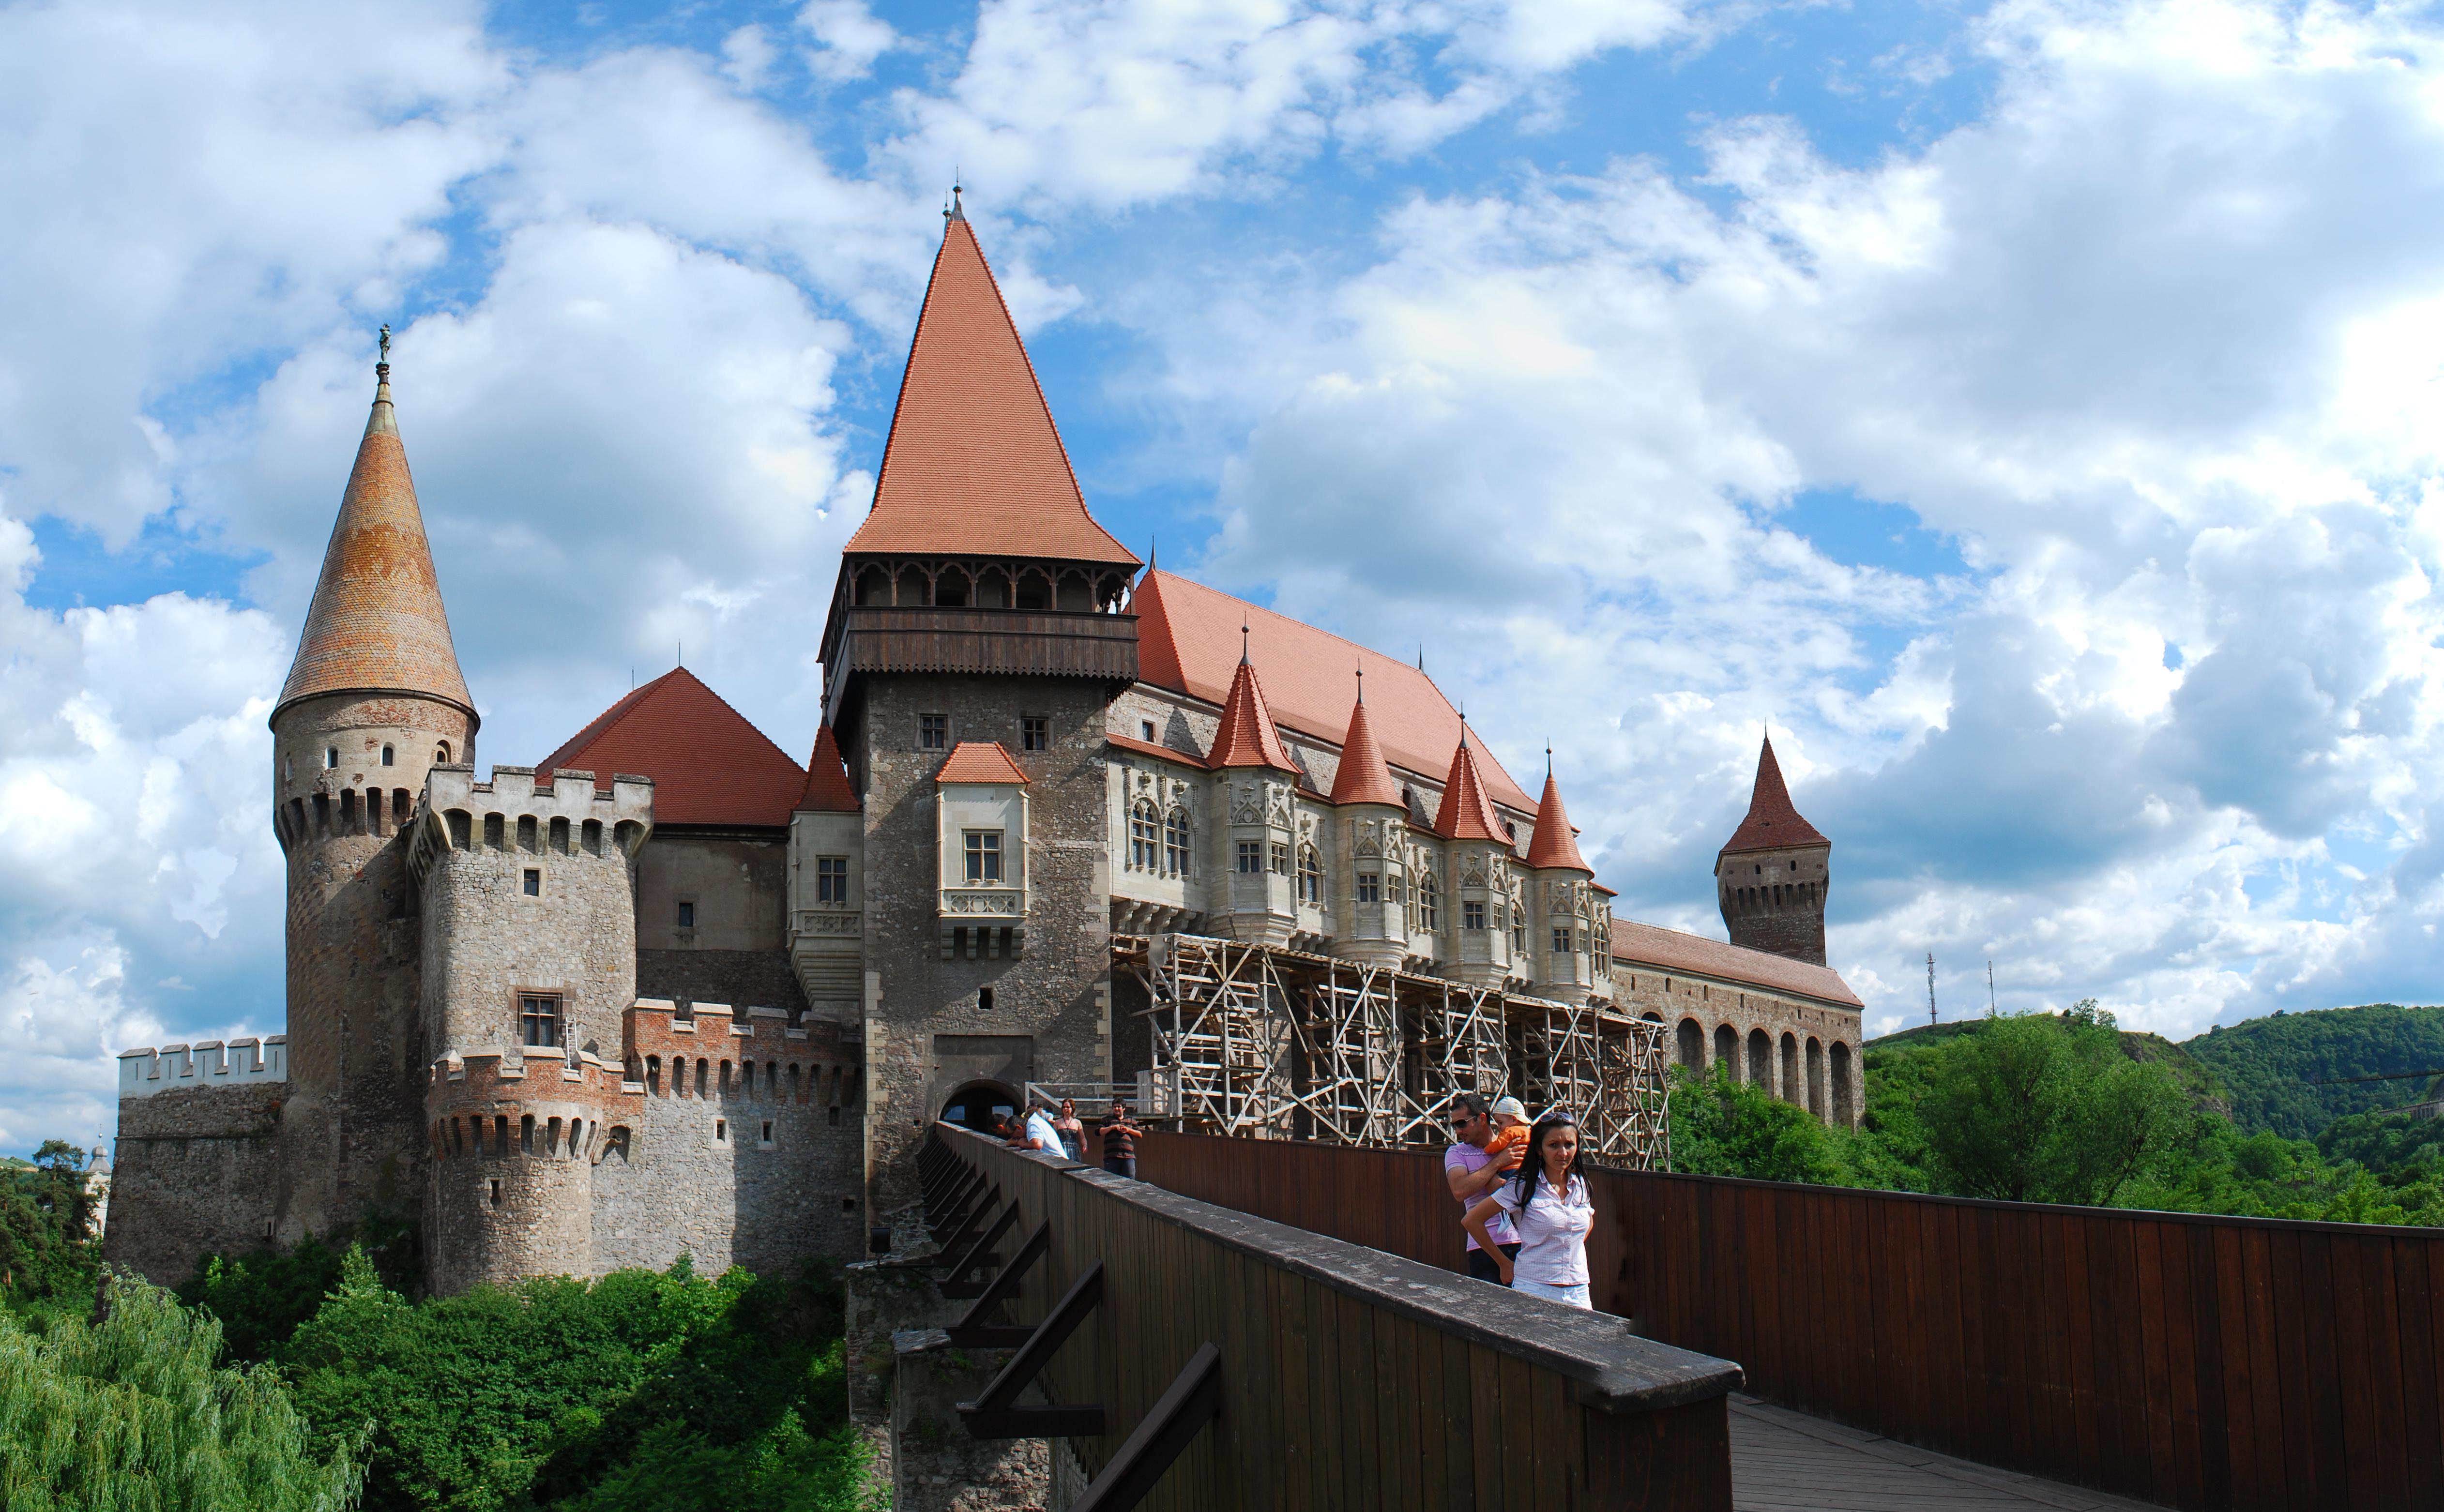 Hunedoara Castle Backgrounds, Compatible - PC, Mobile, Gadgets| 5049x3124 px